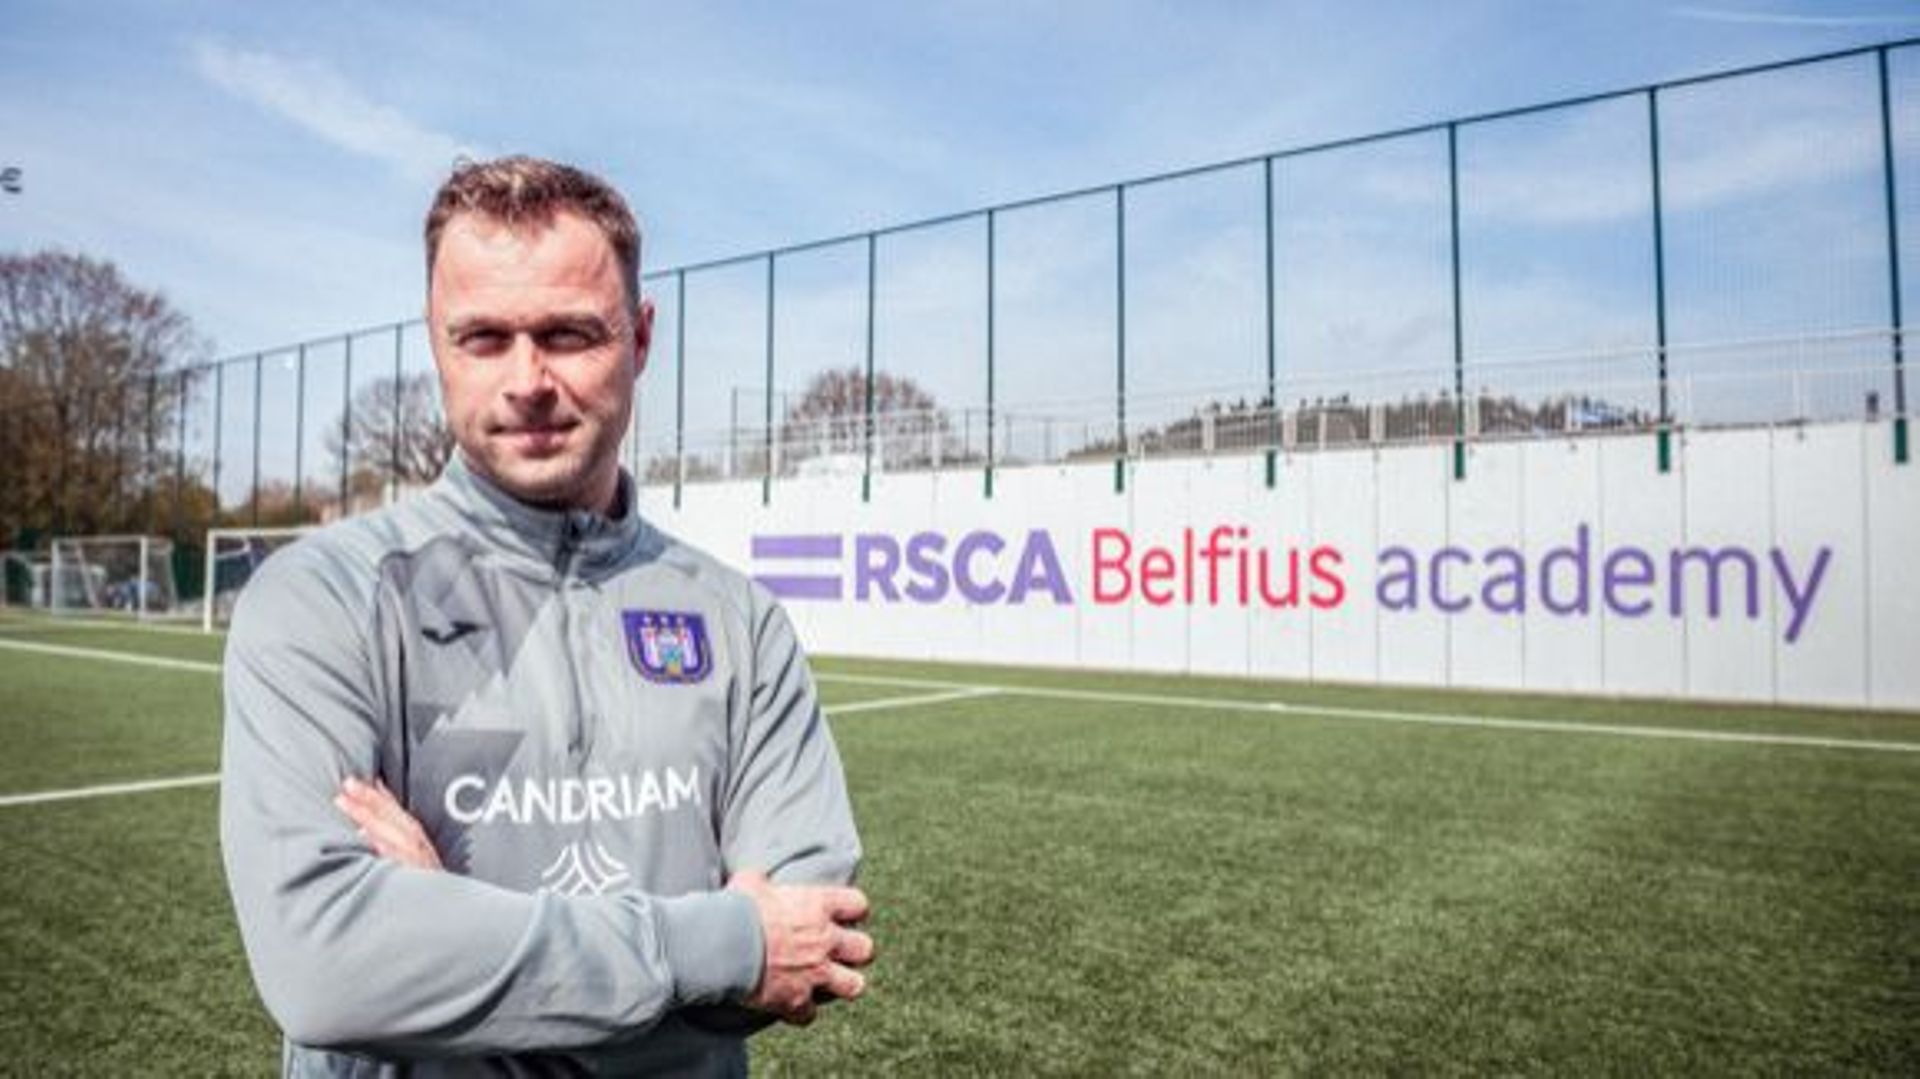 Le Néerlandais Robin Veldman entraînera les espoirs (U21) du RSC Anderlecht la saison prochaine, a annoncé le club bruxellois lundi.